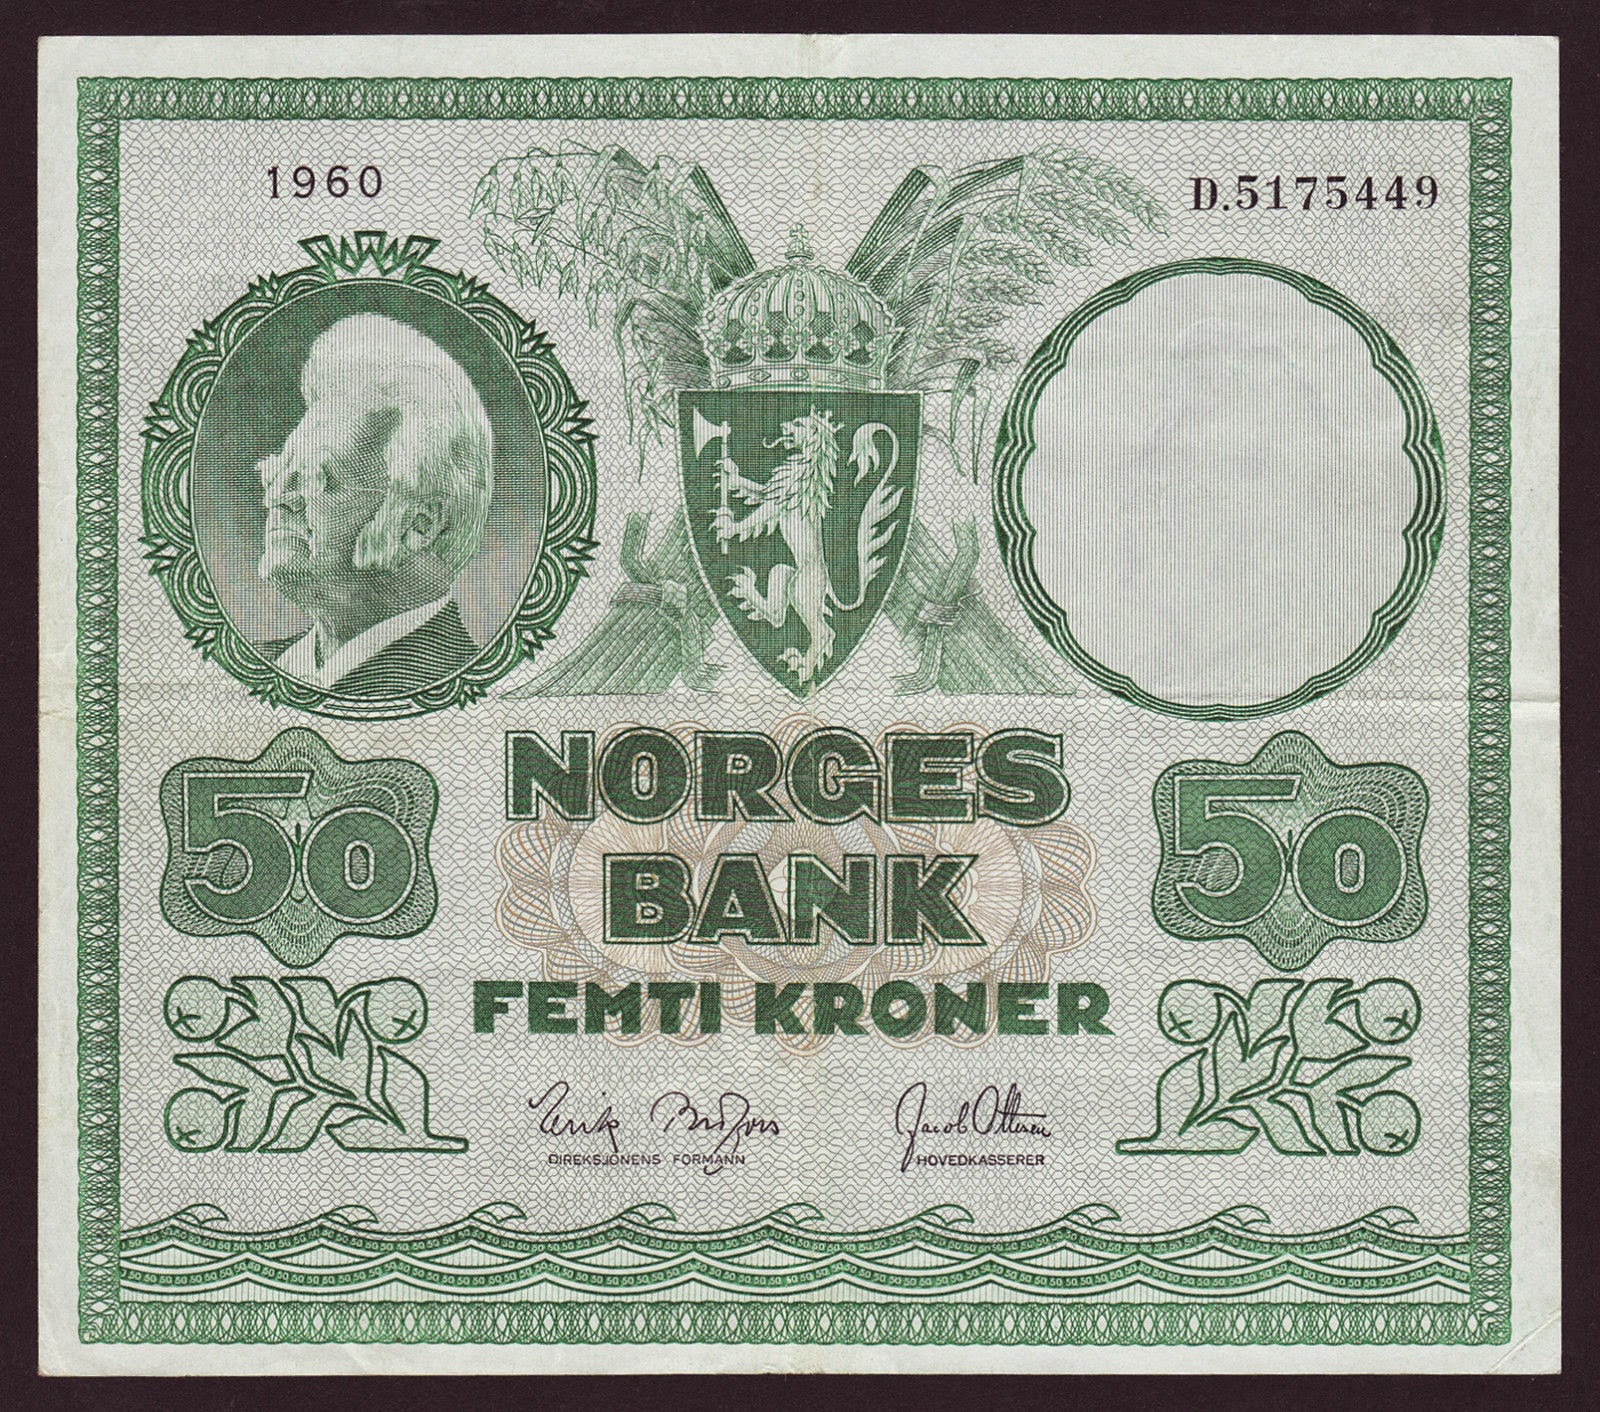 Norway Banknotes 50 Kroner banknote 1960 Bjørnstjerne Bjørnson